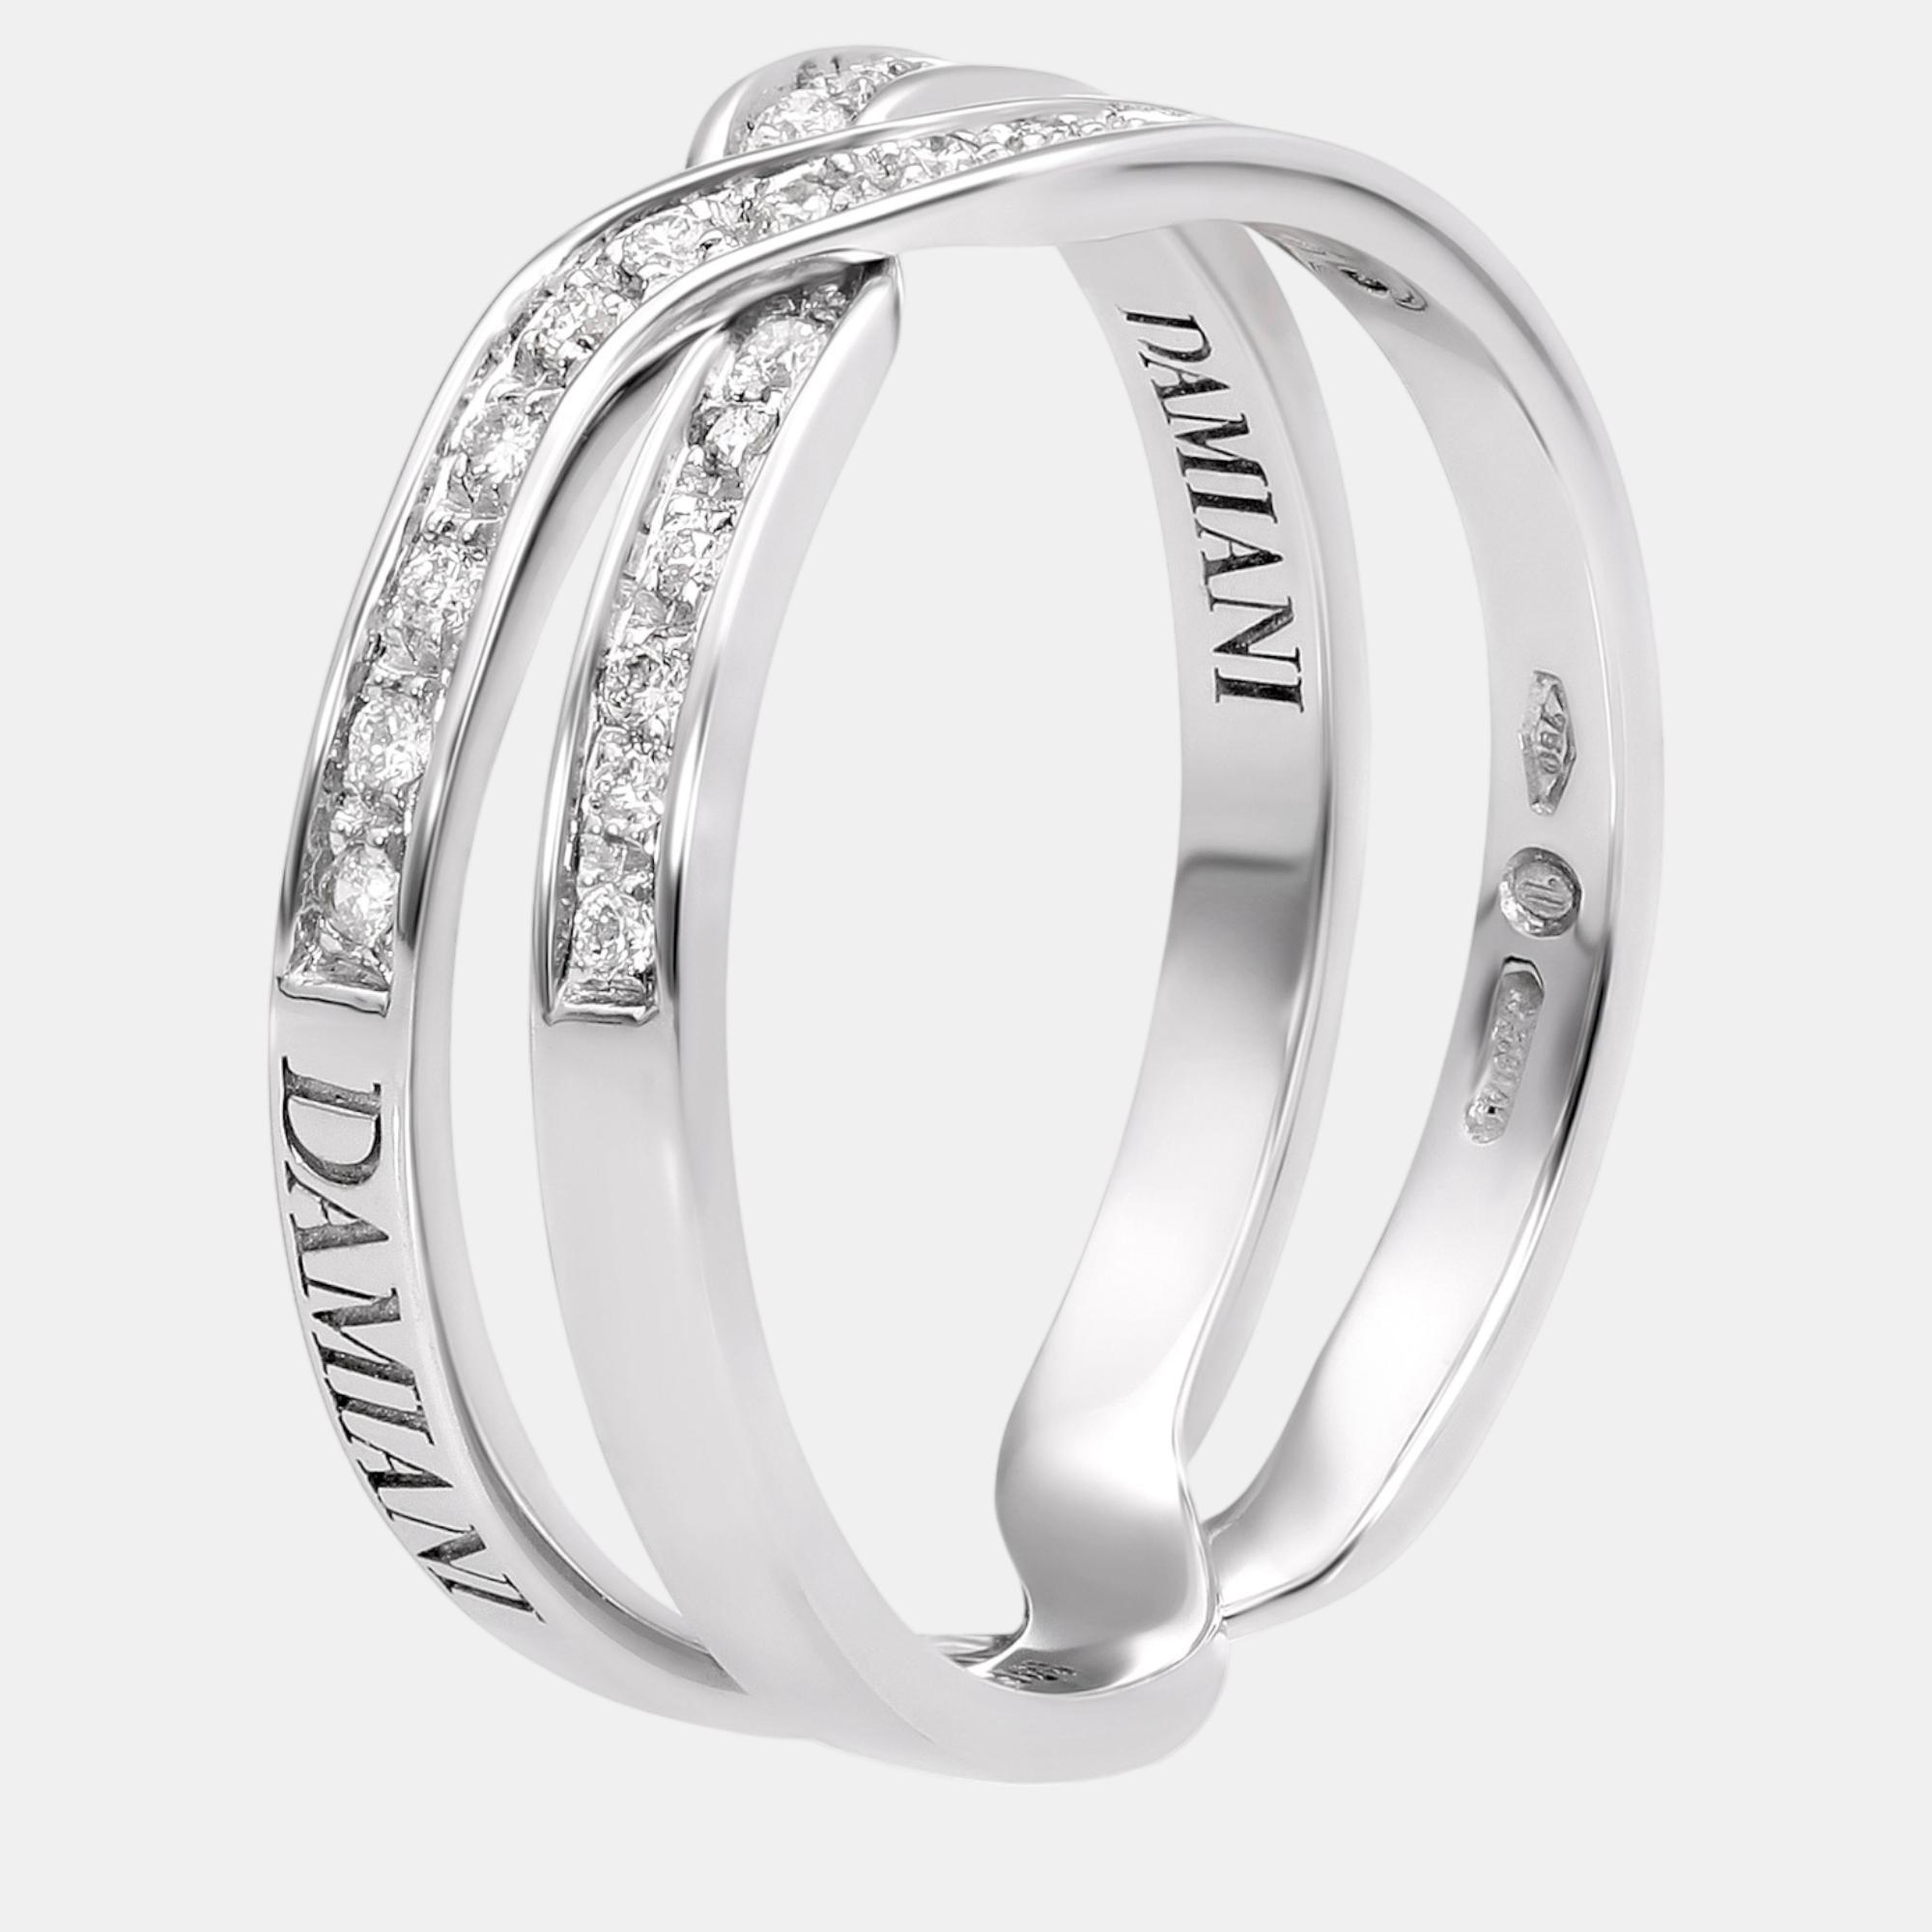 Damiani 18k white gold, diamond band ring